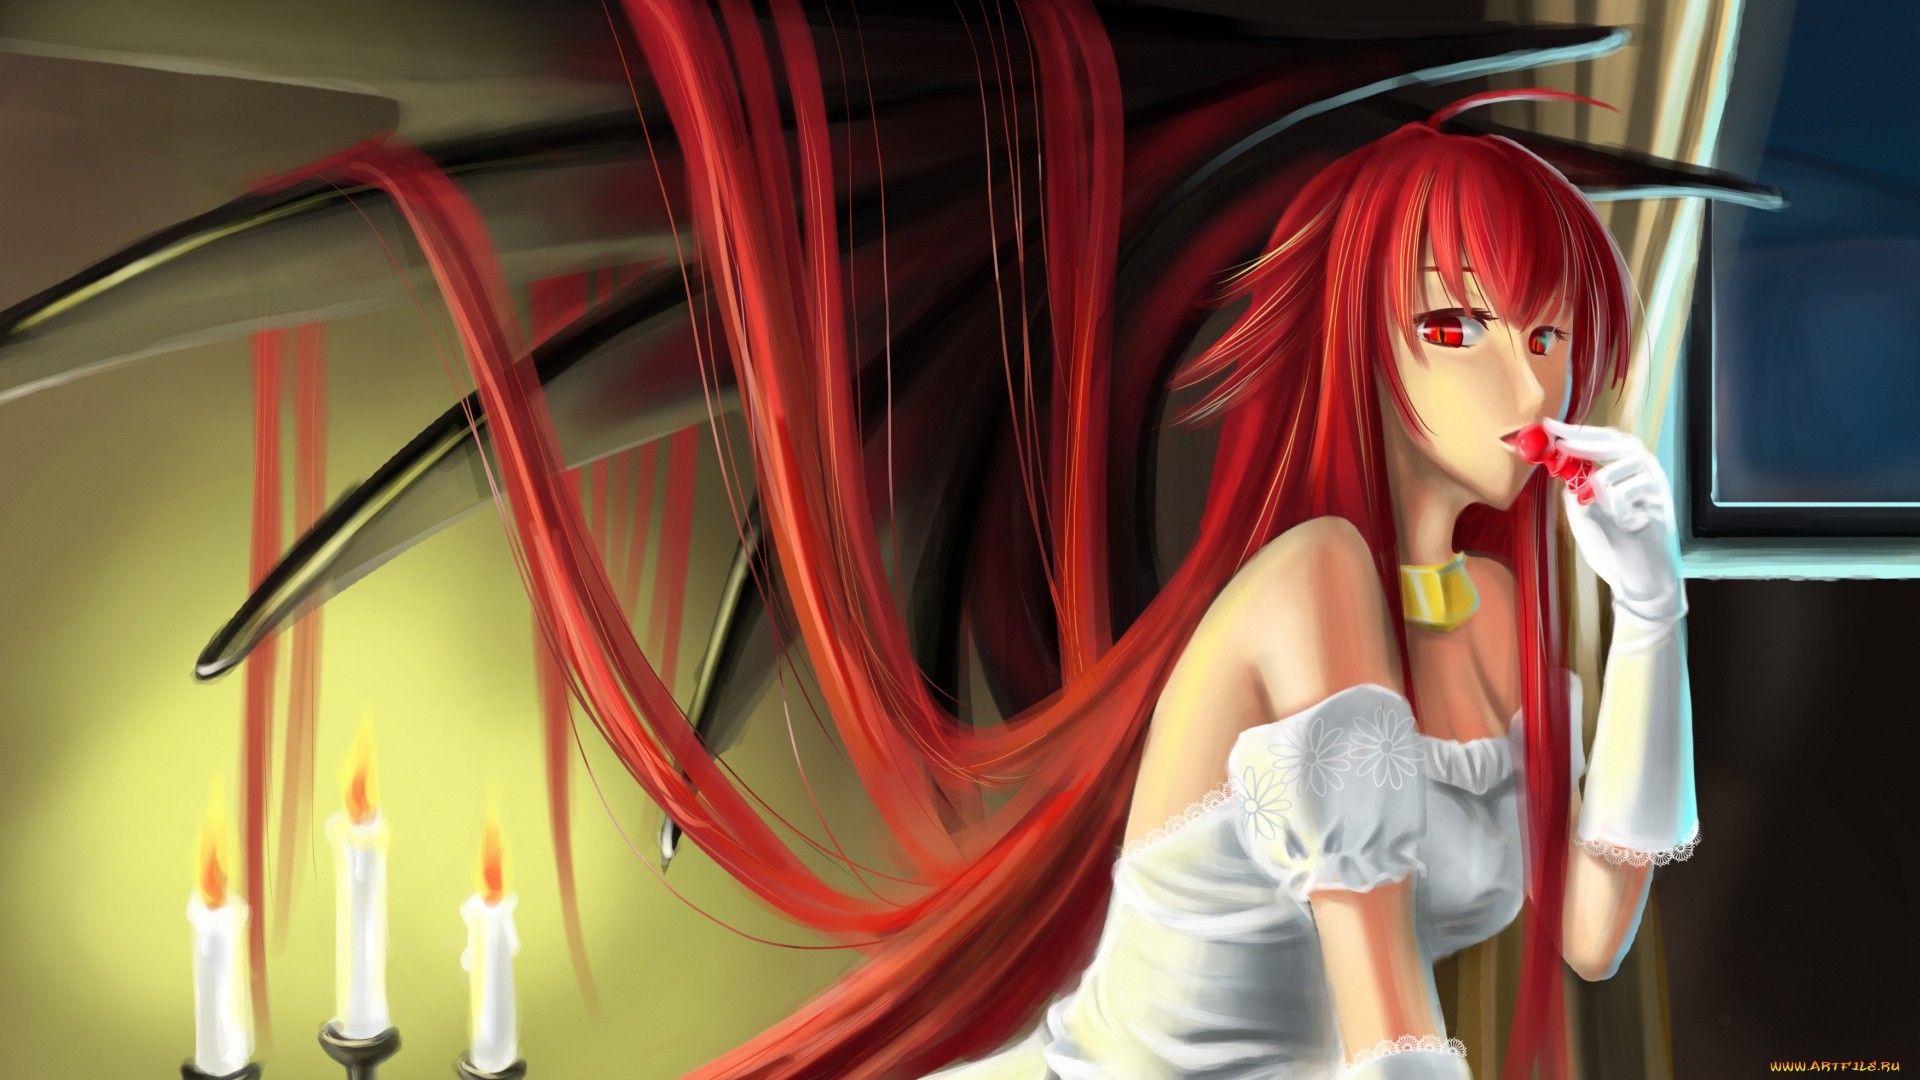 Red Hair Anime Girl wallpaper